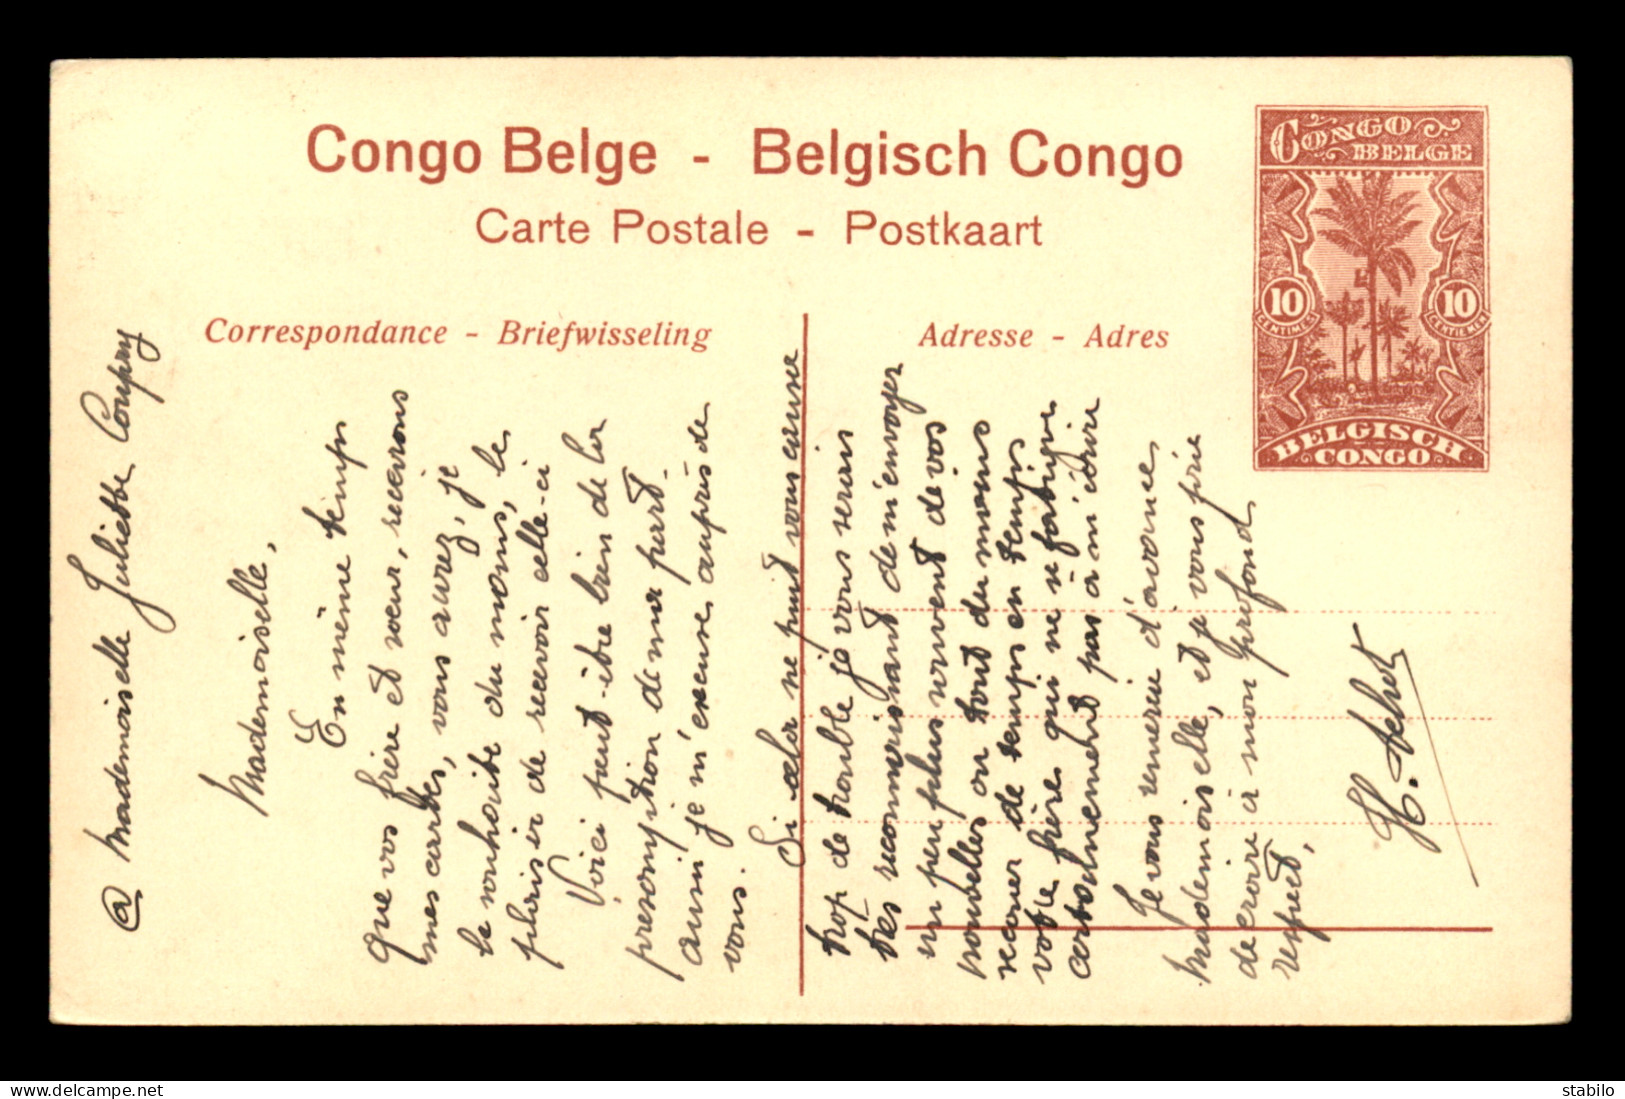 CONGO KINSHASA -  EMBALLAGE DE POISSON DANS LA MAYUMBE - Congo Belge